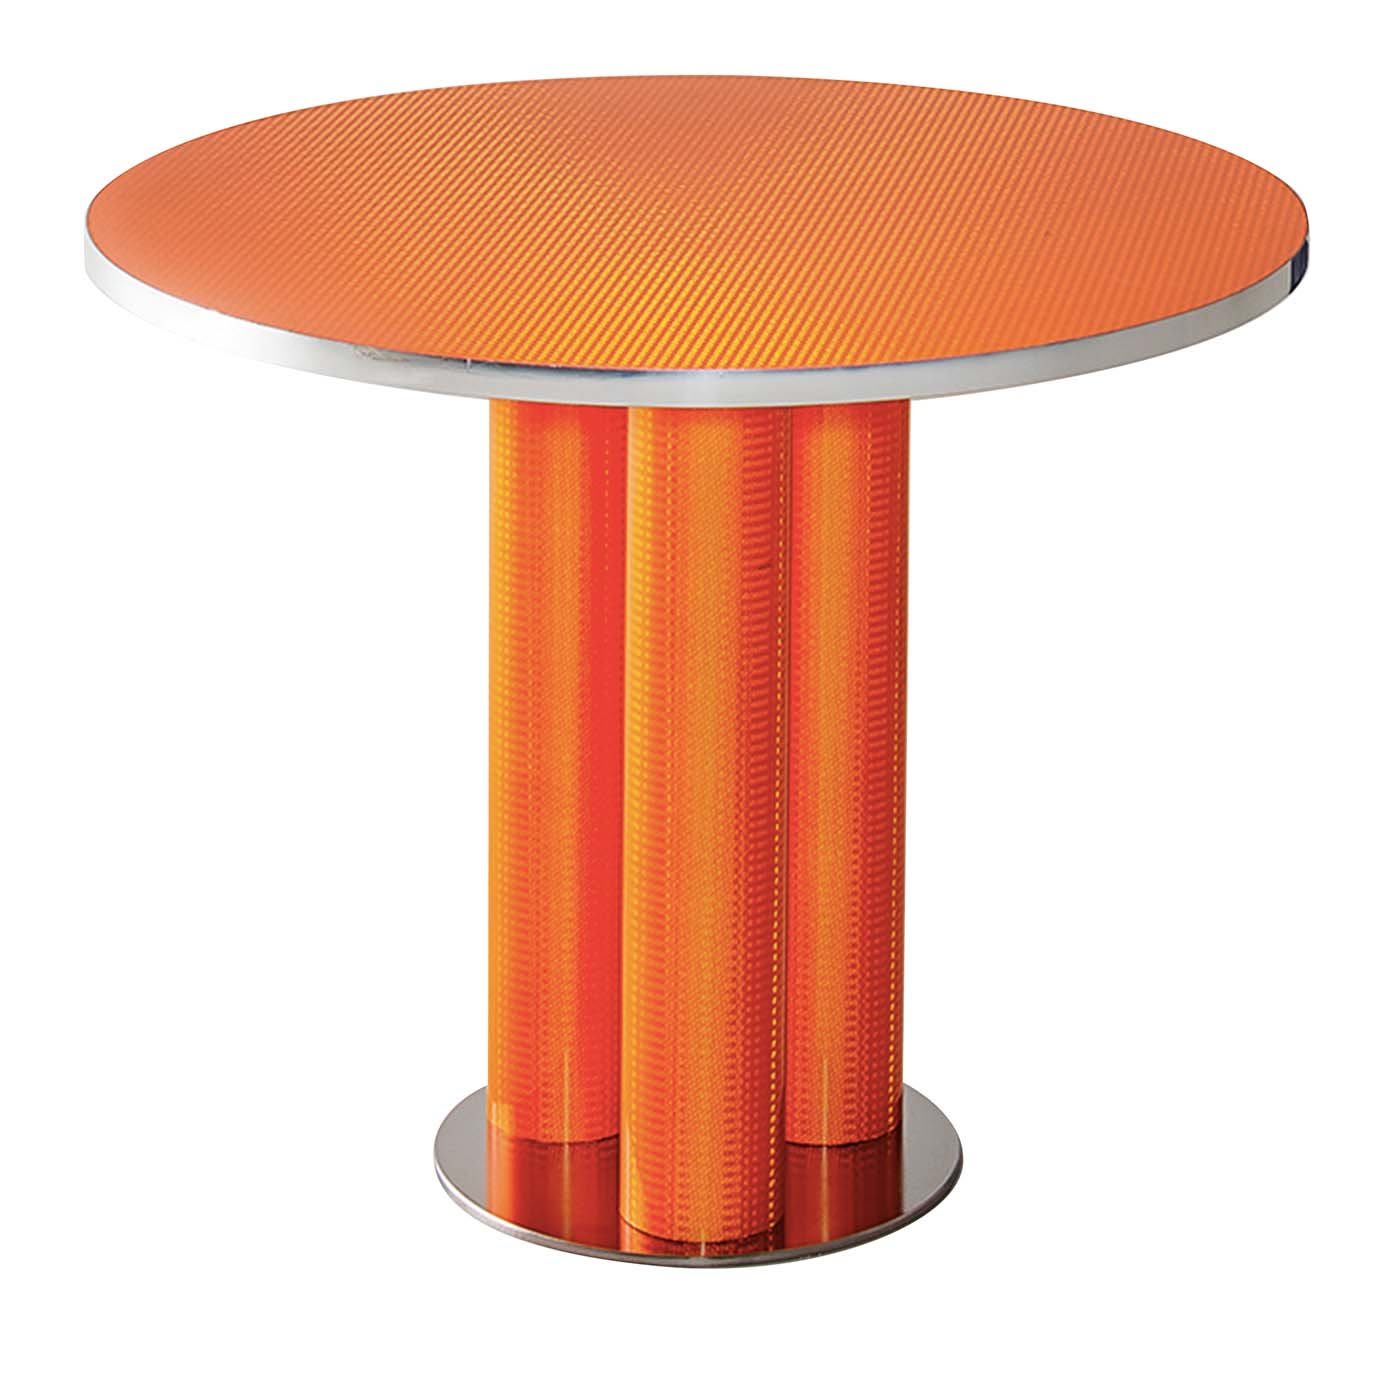 Reflective Collection - round dining table - Sebastiano Bottos